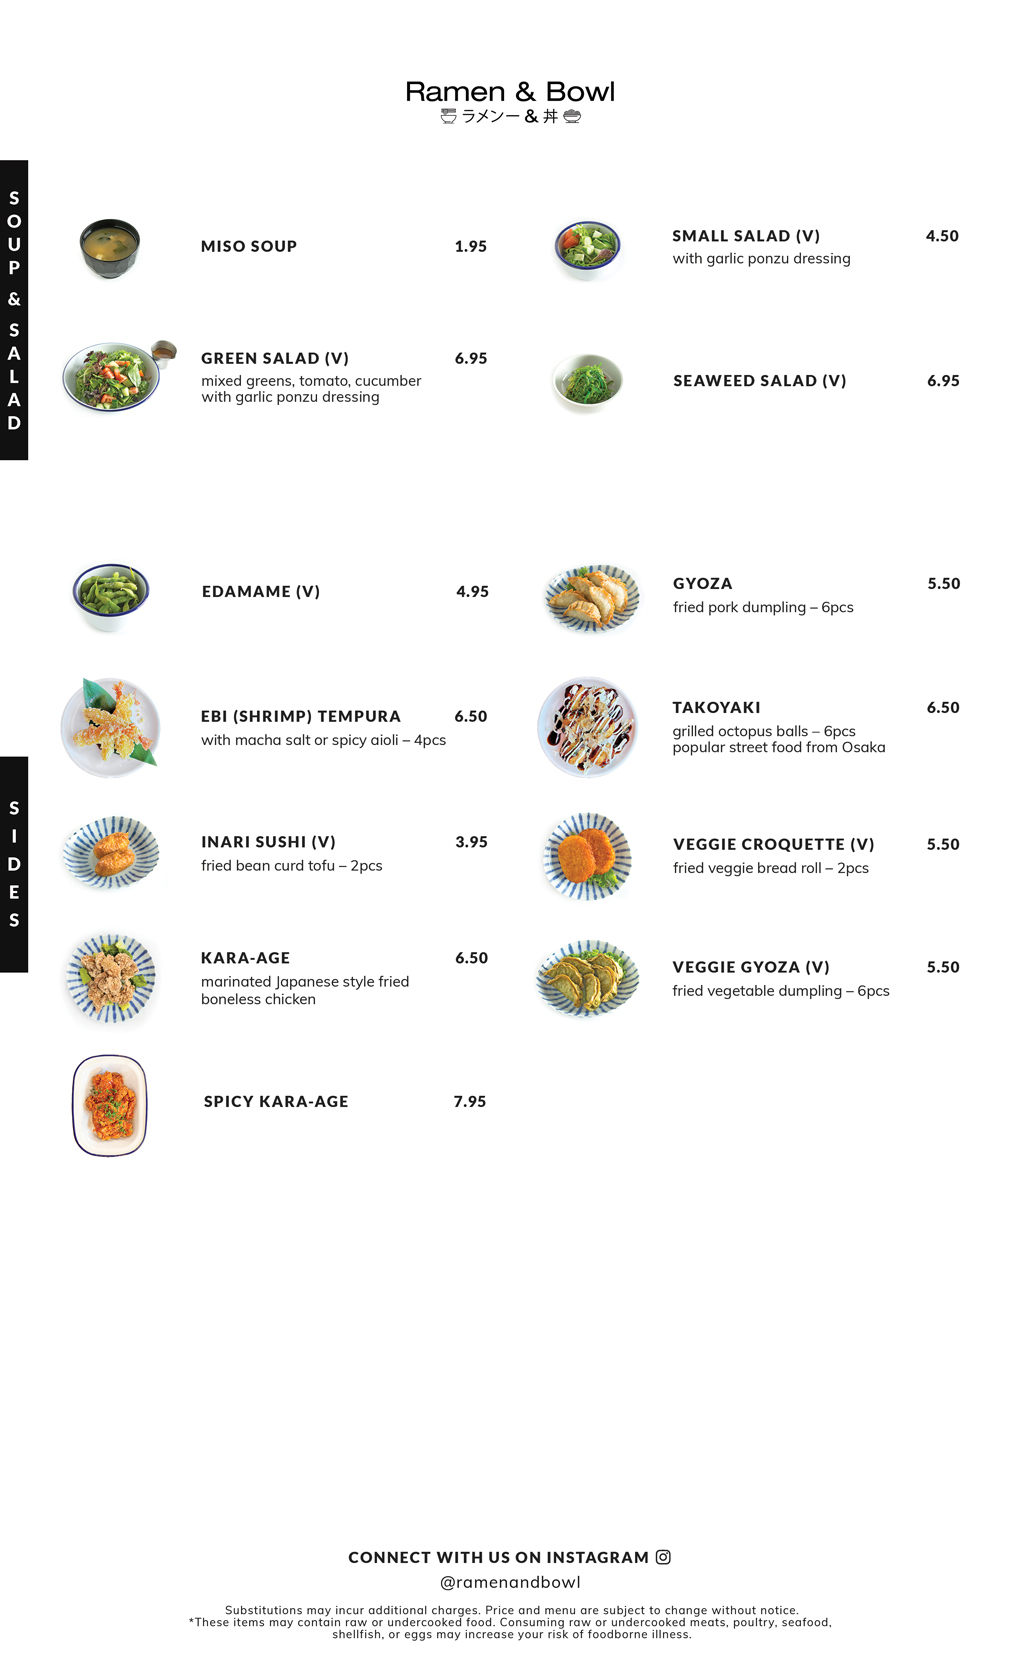 Ramen & Bowl digital menu